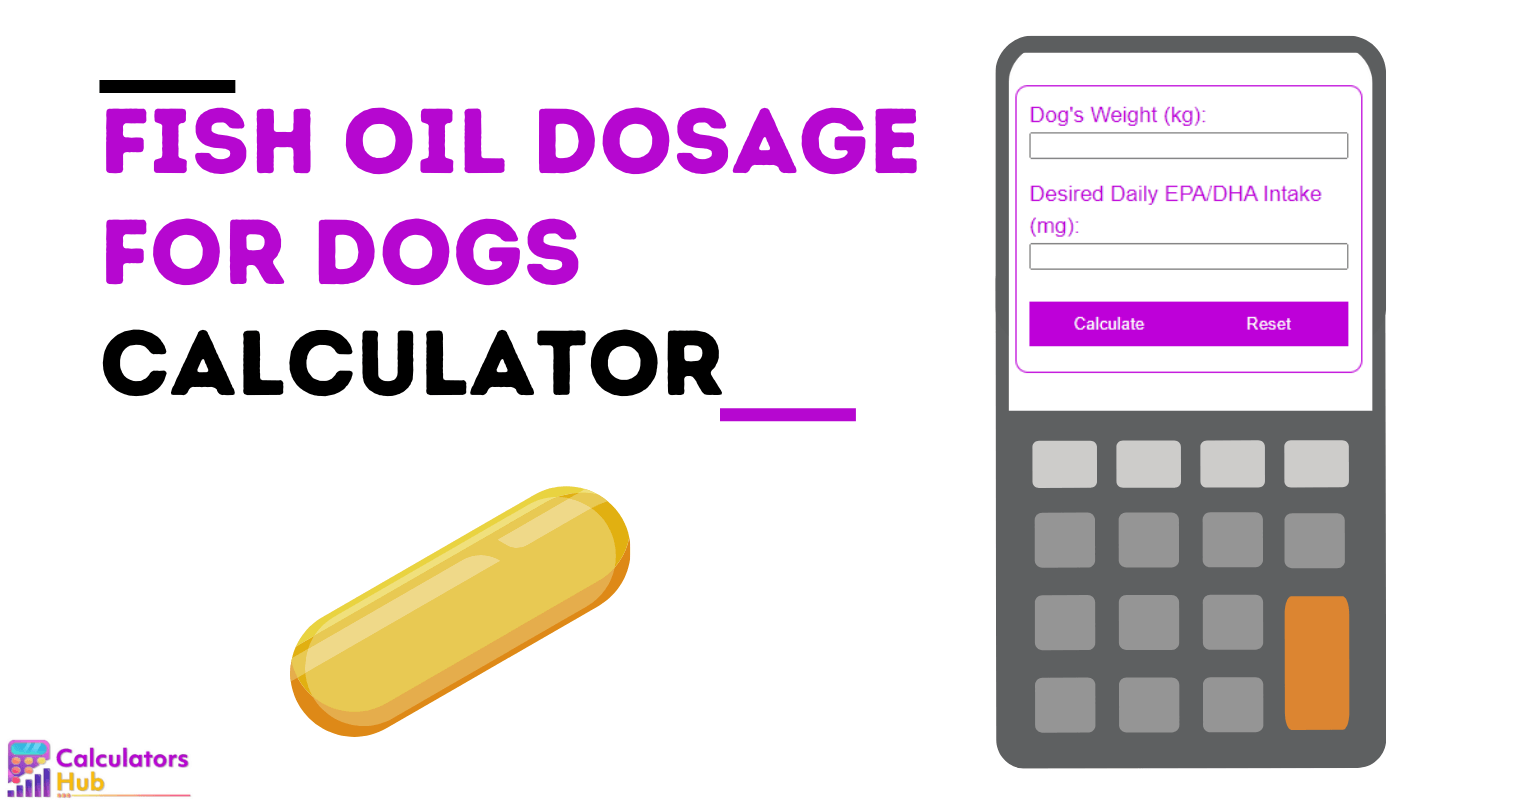 Calculadora de dosagem de óleo de peixe para cães